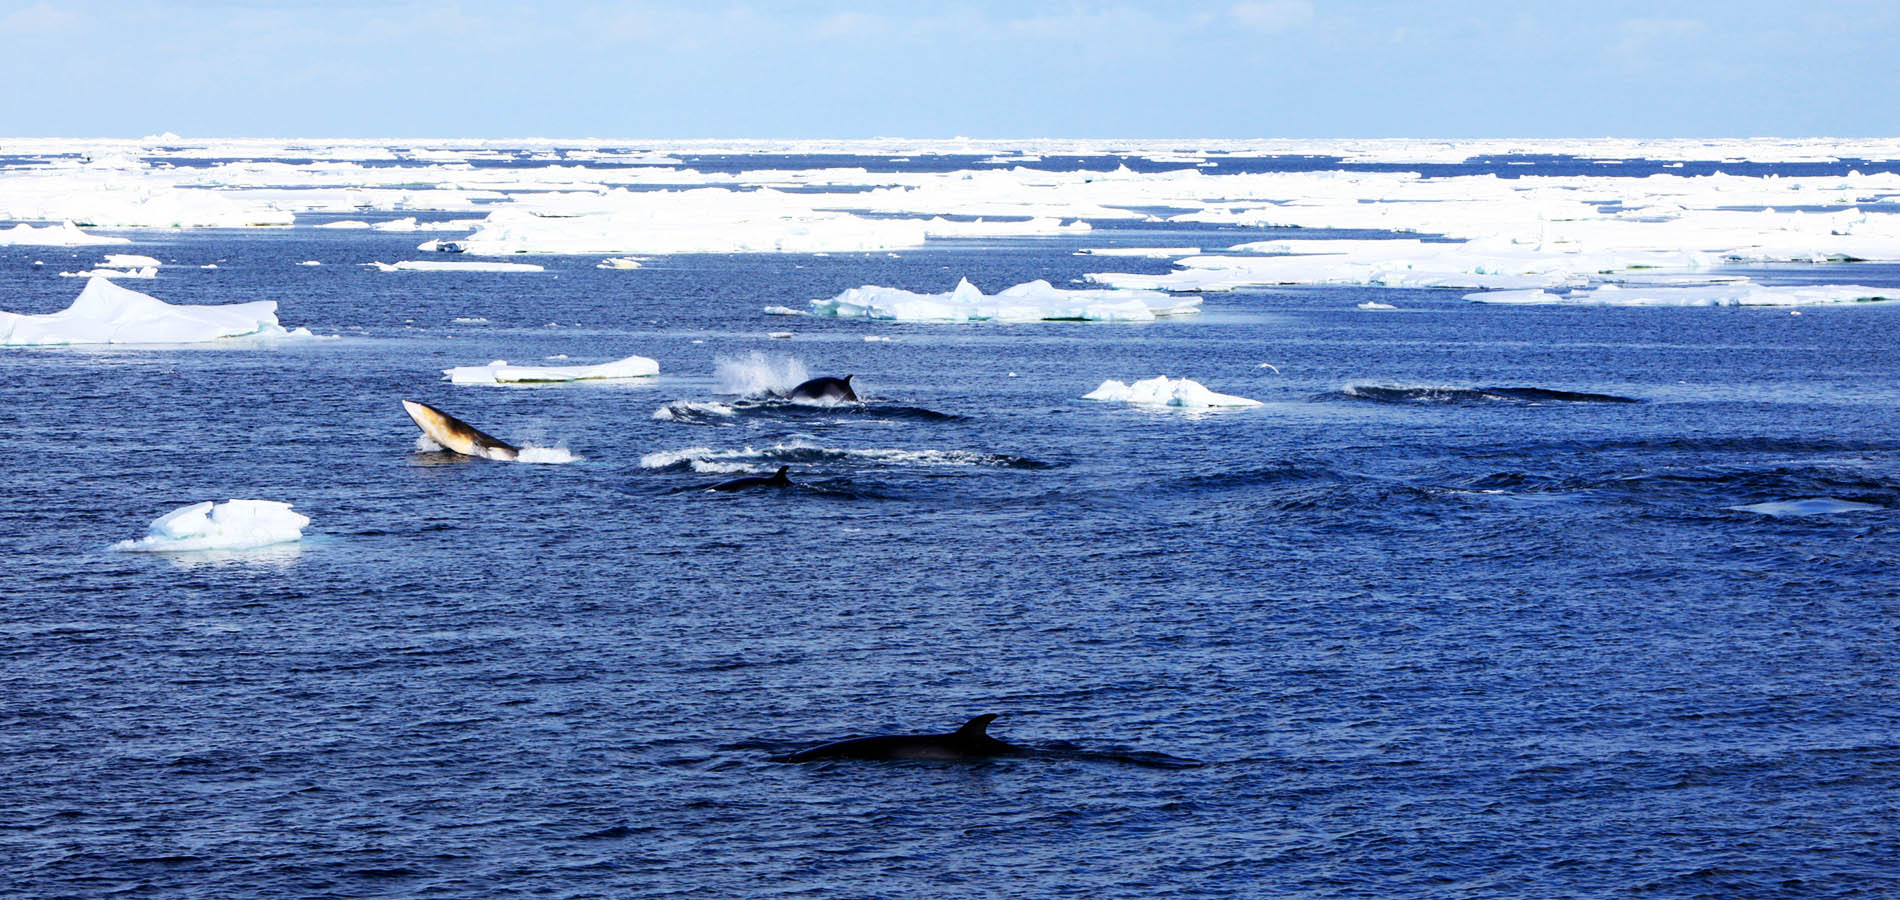 日本鯨類研究所は水産資源の適切な管理と利用に寄与することを目的とする